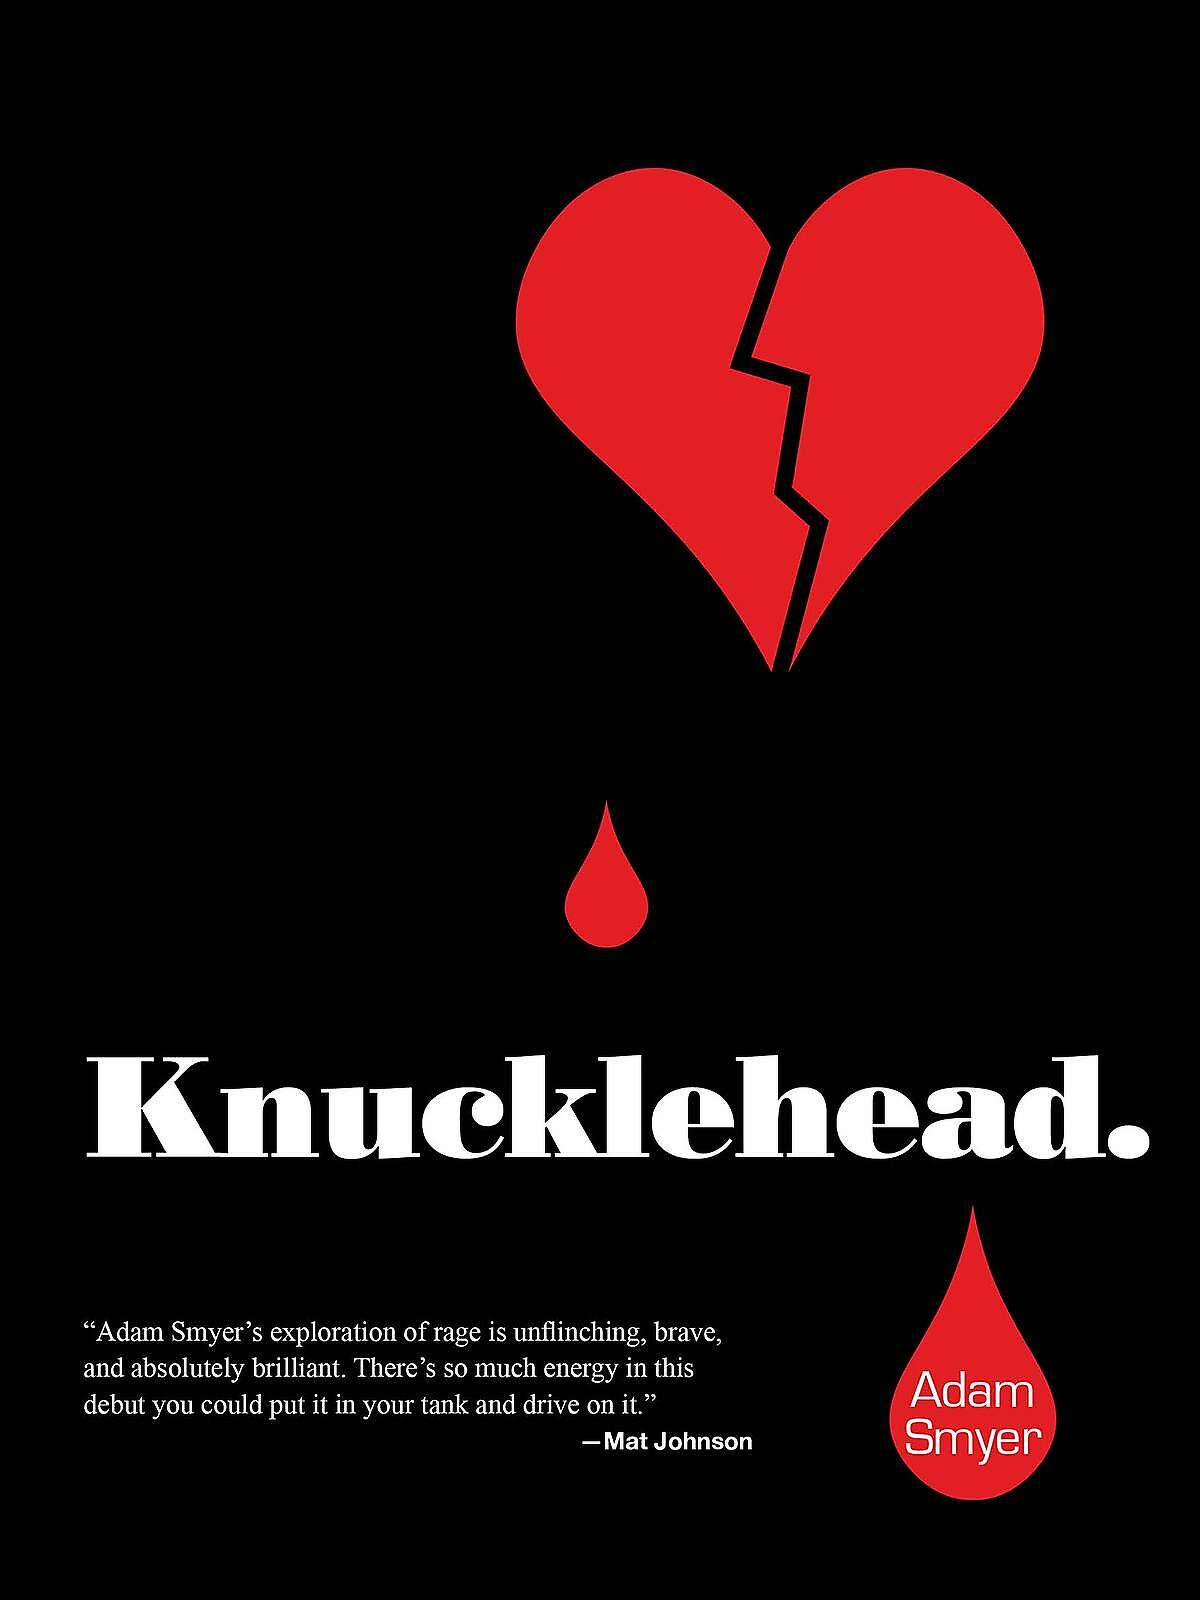 "Knucklehead"